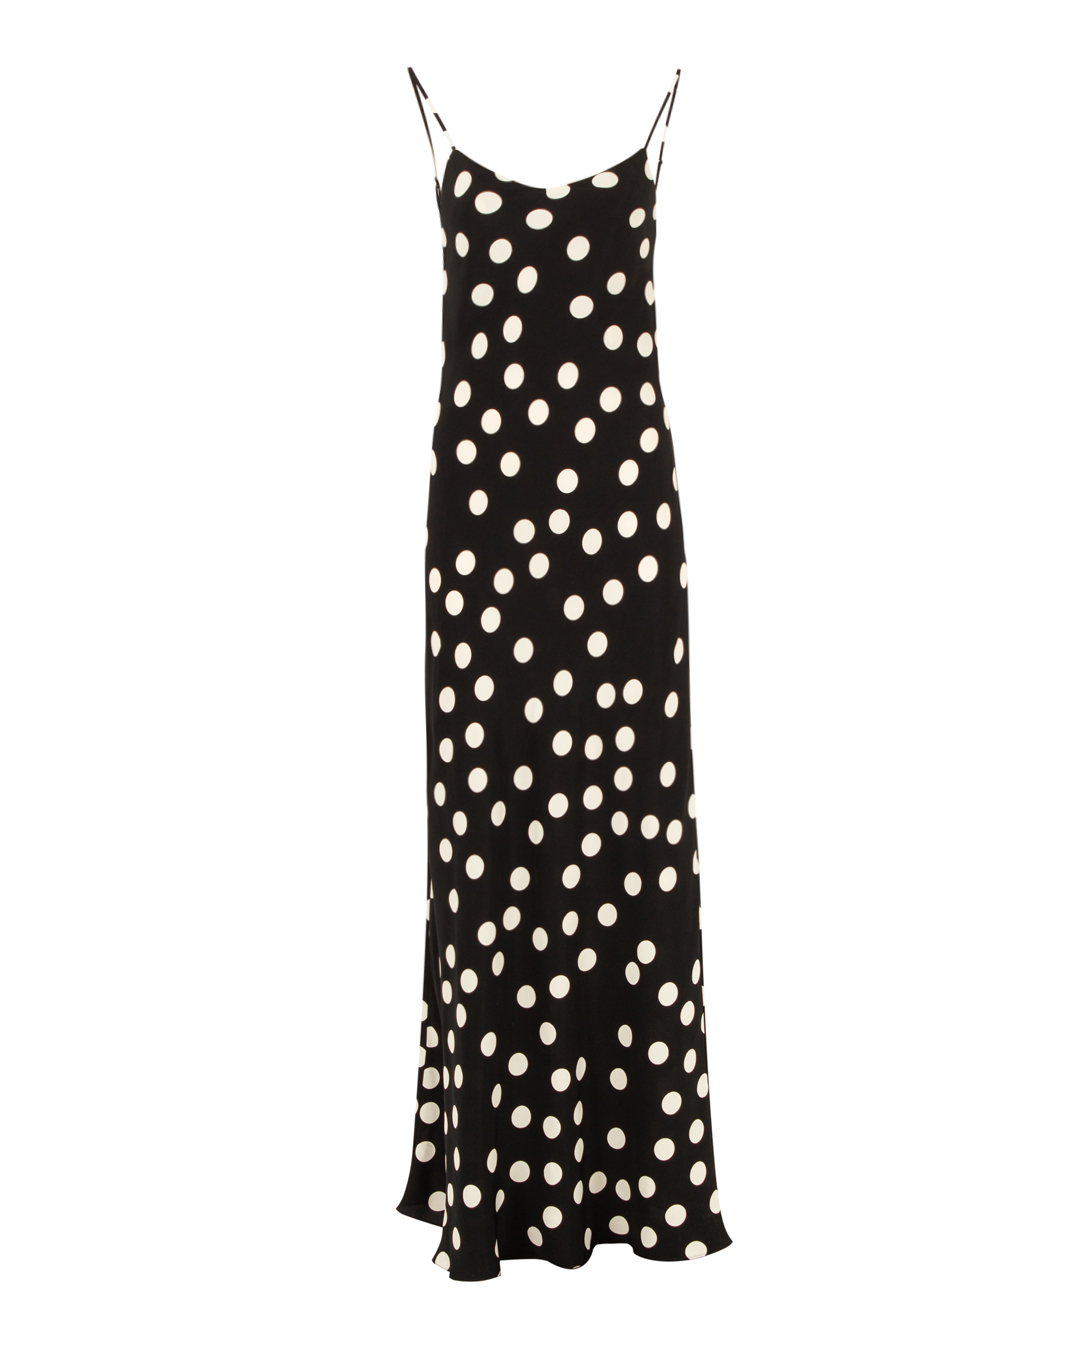 платье ROOM513 VOL6DR01-17 черный+белый m, размер m, цвет черный+белый